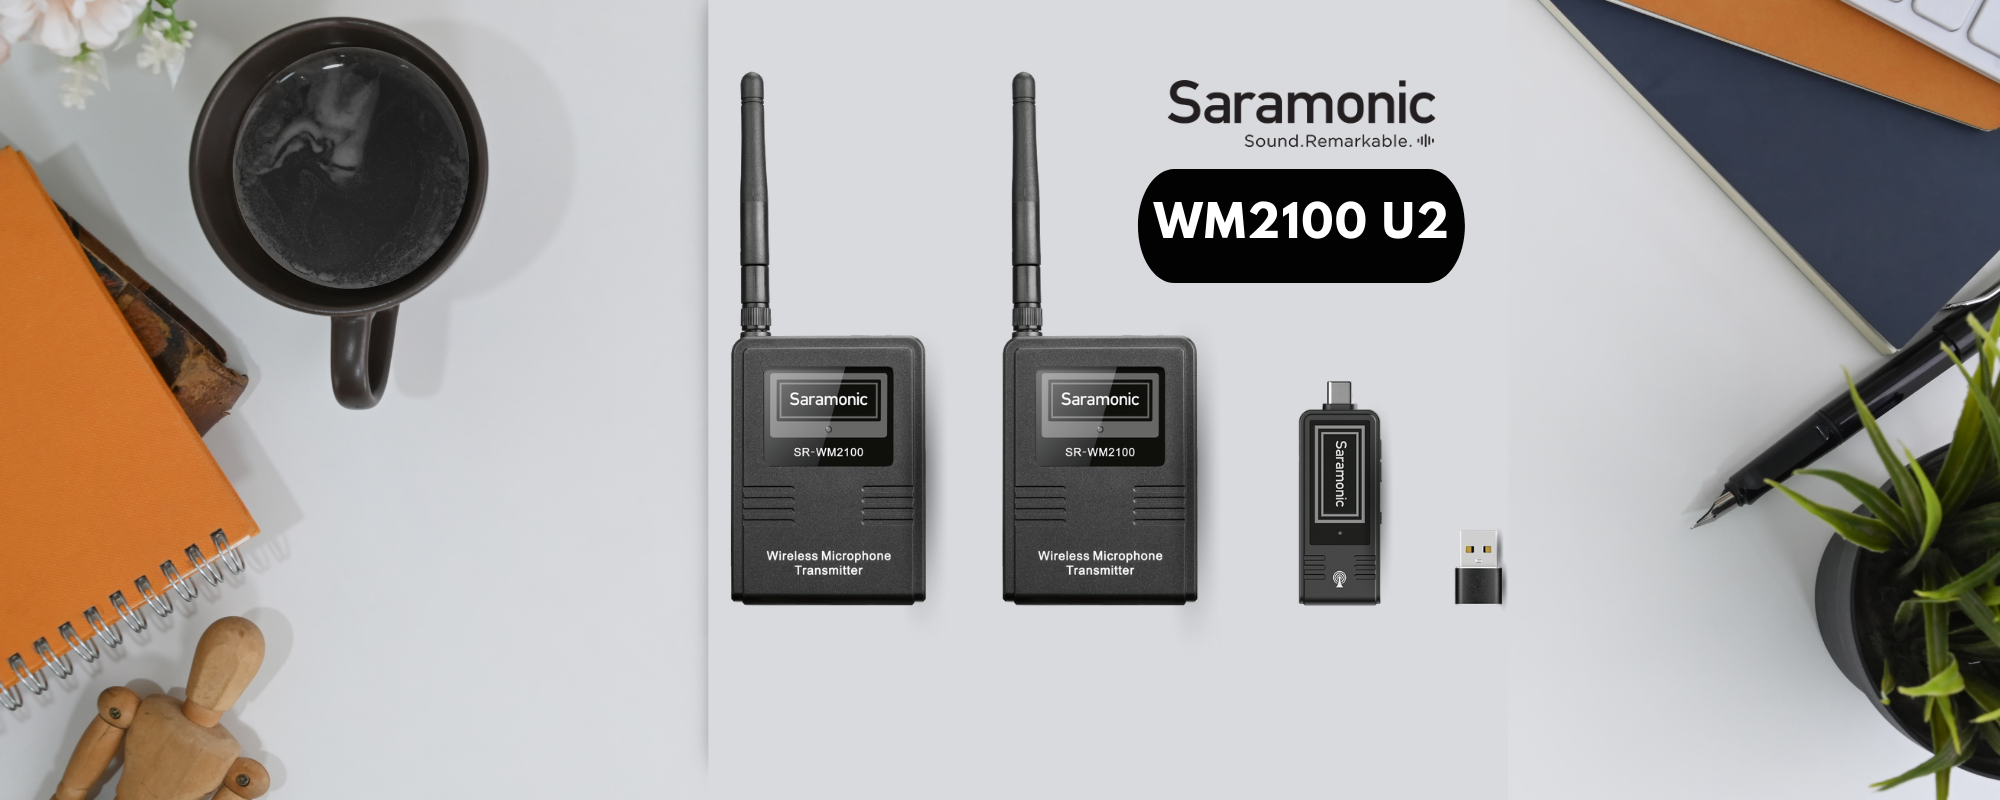 Zestaw do bezprzewodowej transmisji dźwięku Saramonic WM2100 U2